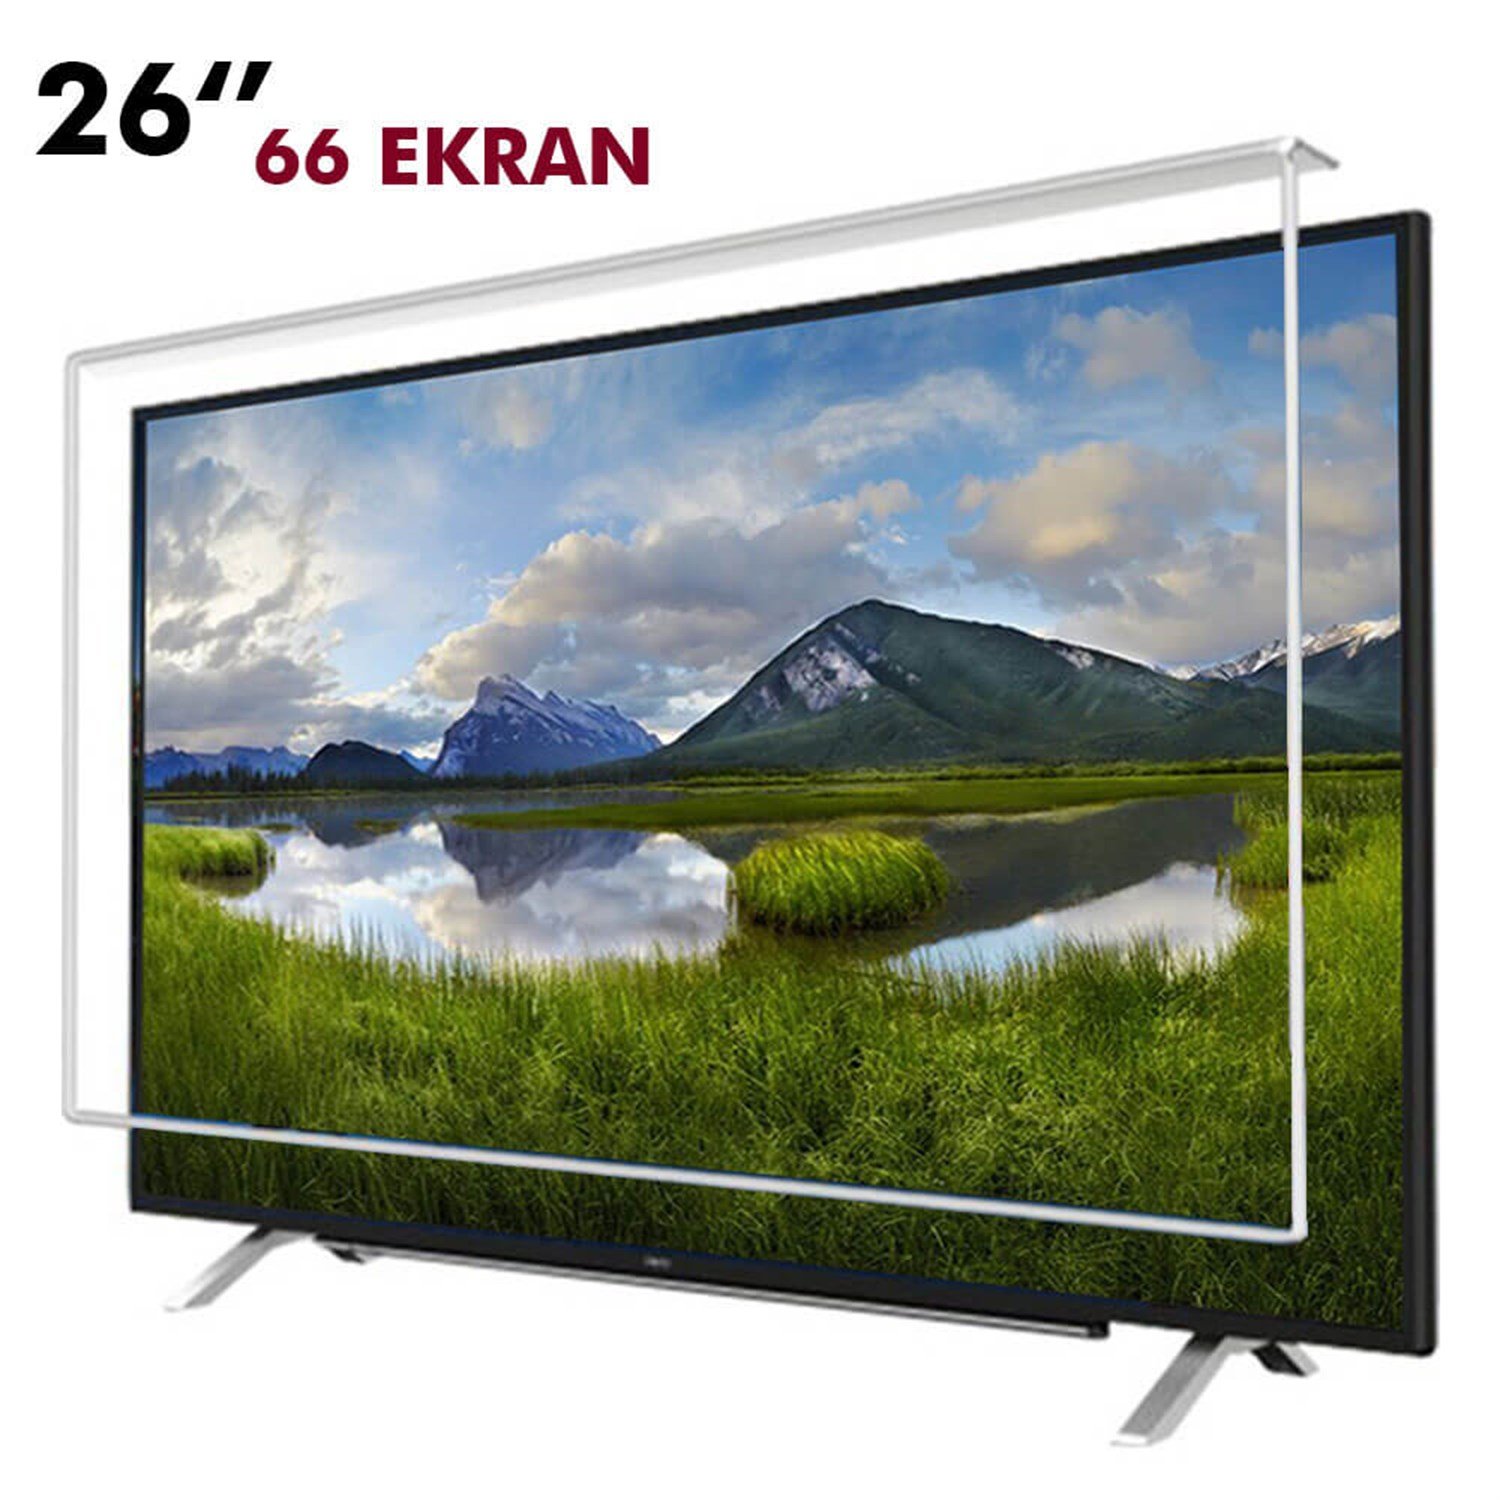 Tv Ekran Koruyucu 66 Ekran(26” inch) | Okularenkkat.com